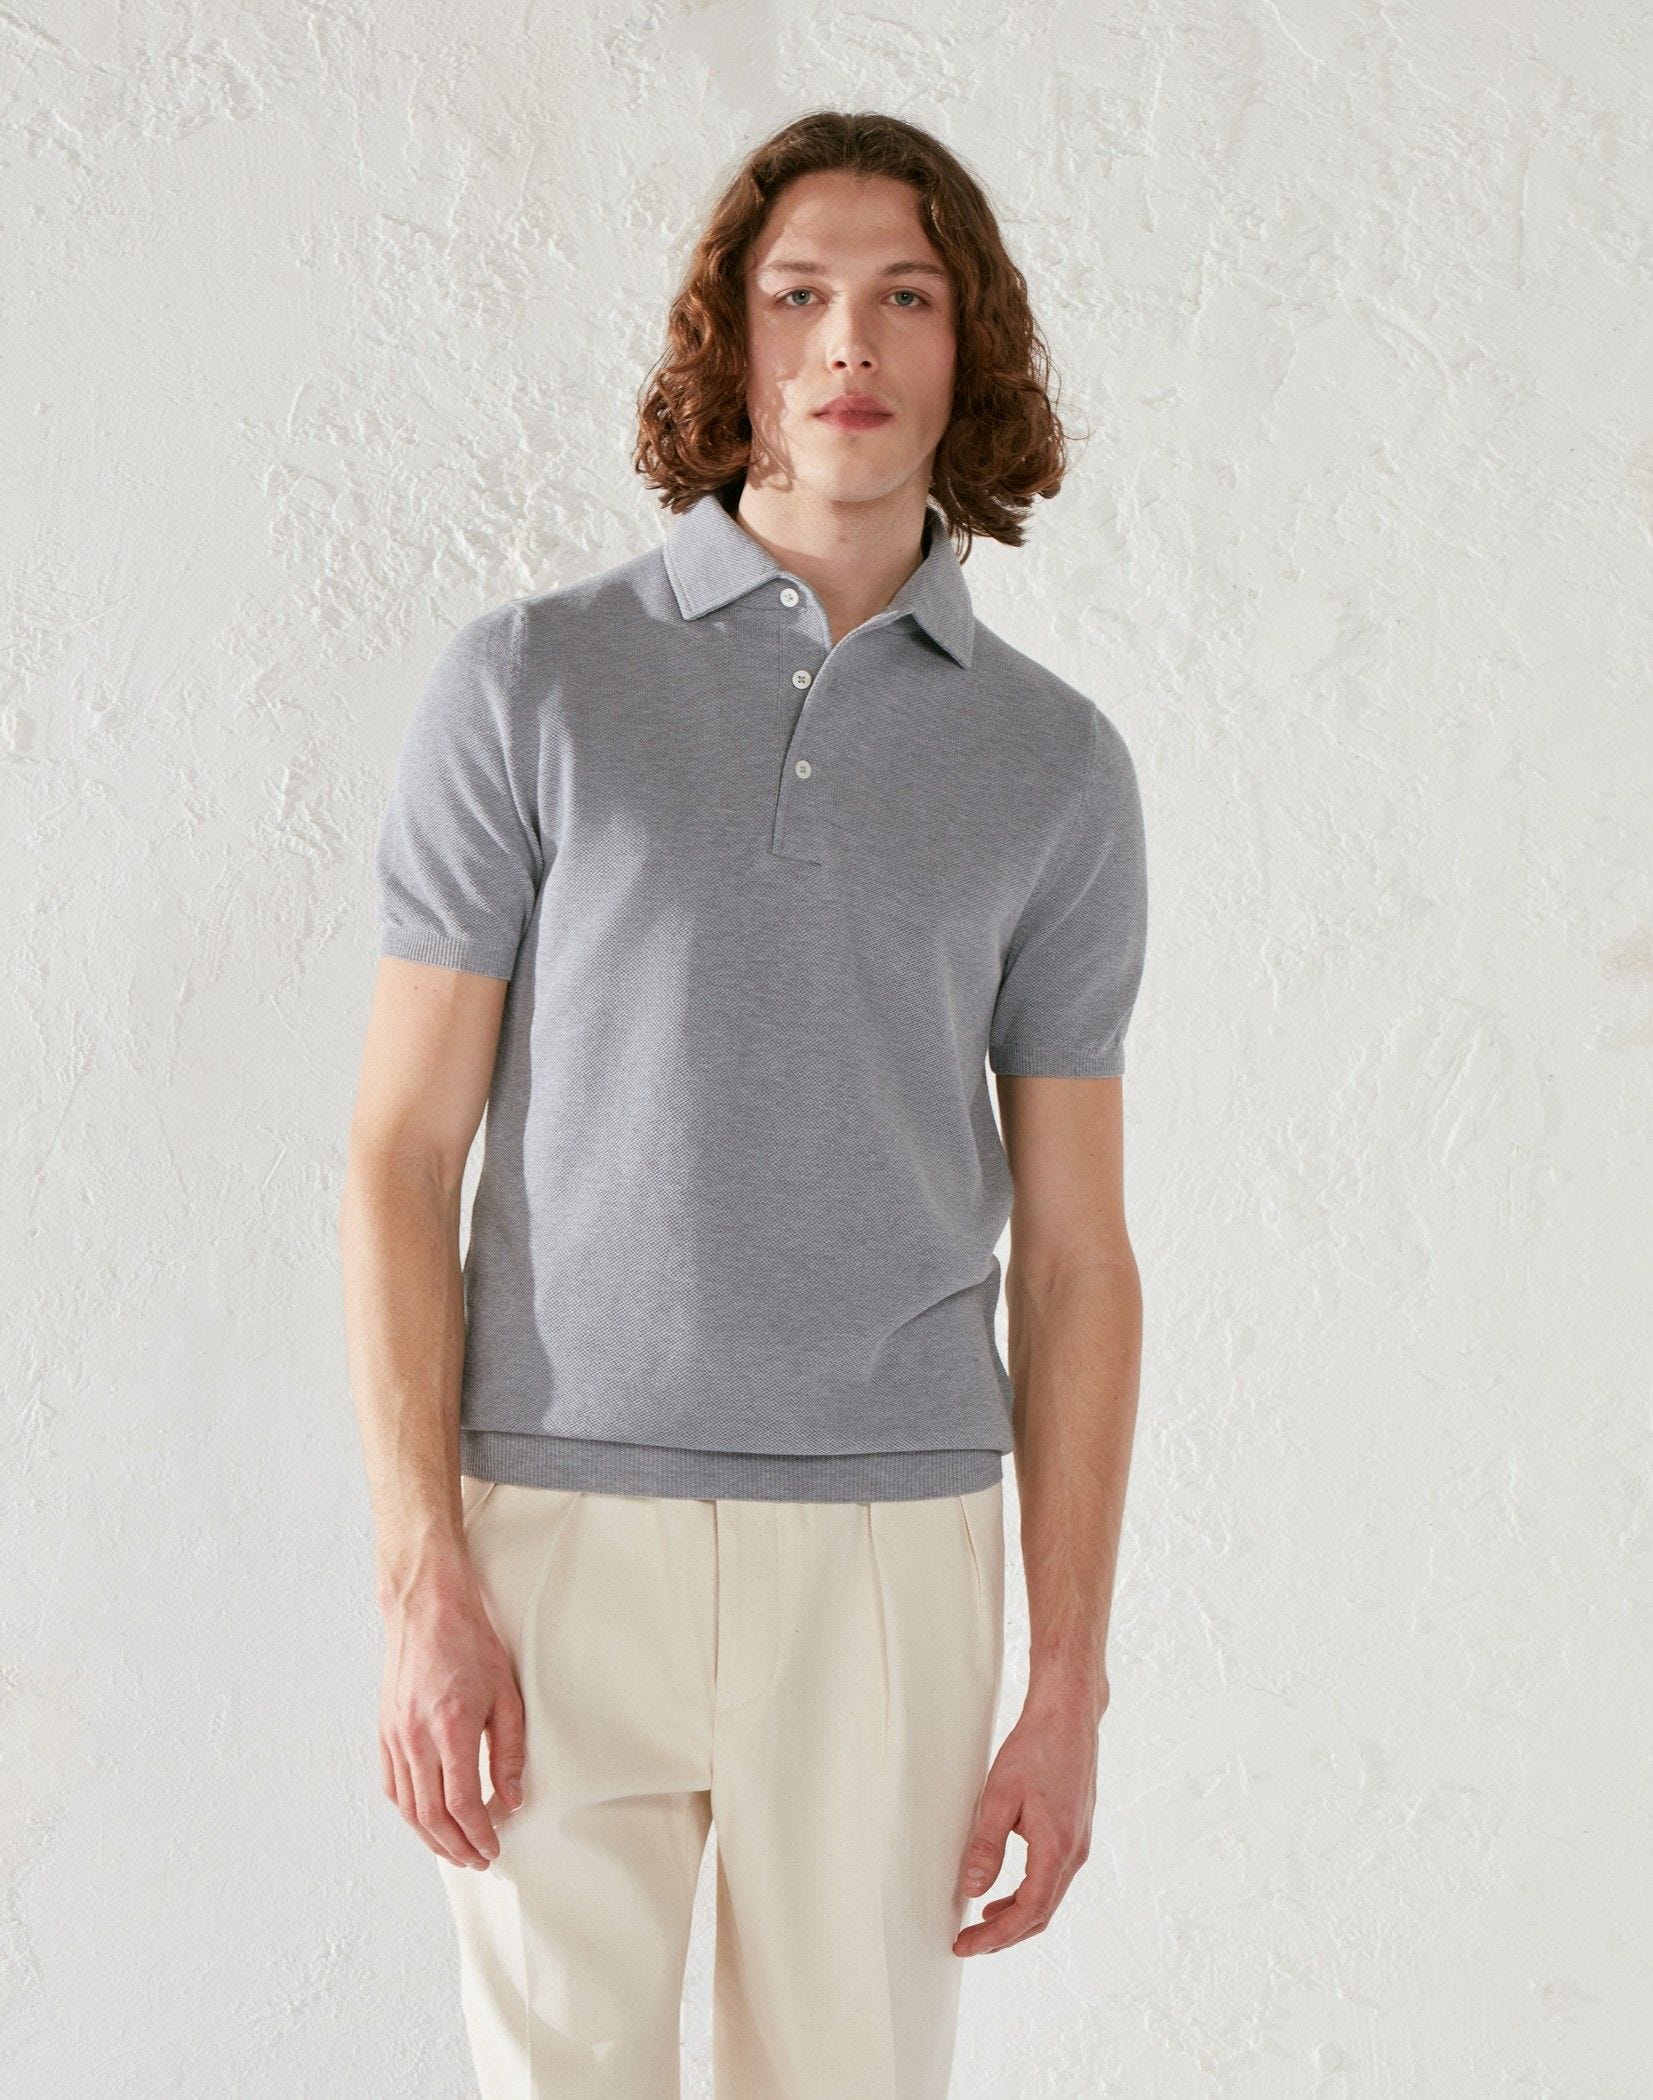 Grey cotton crêpe polo shirt